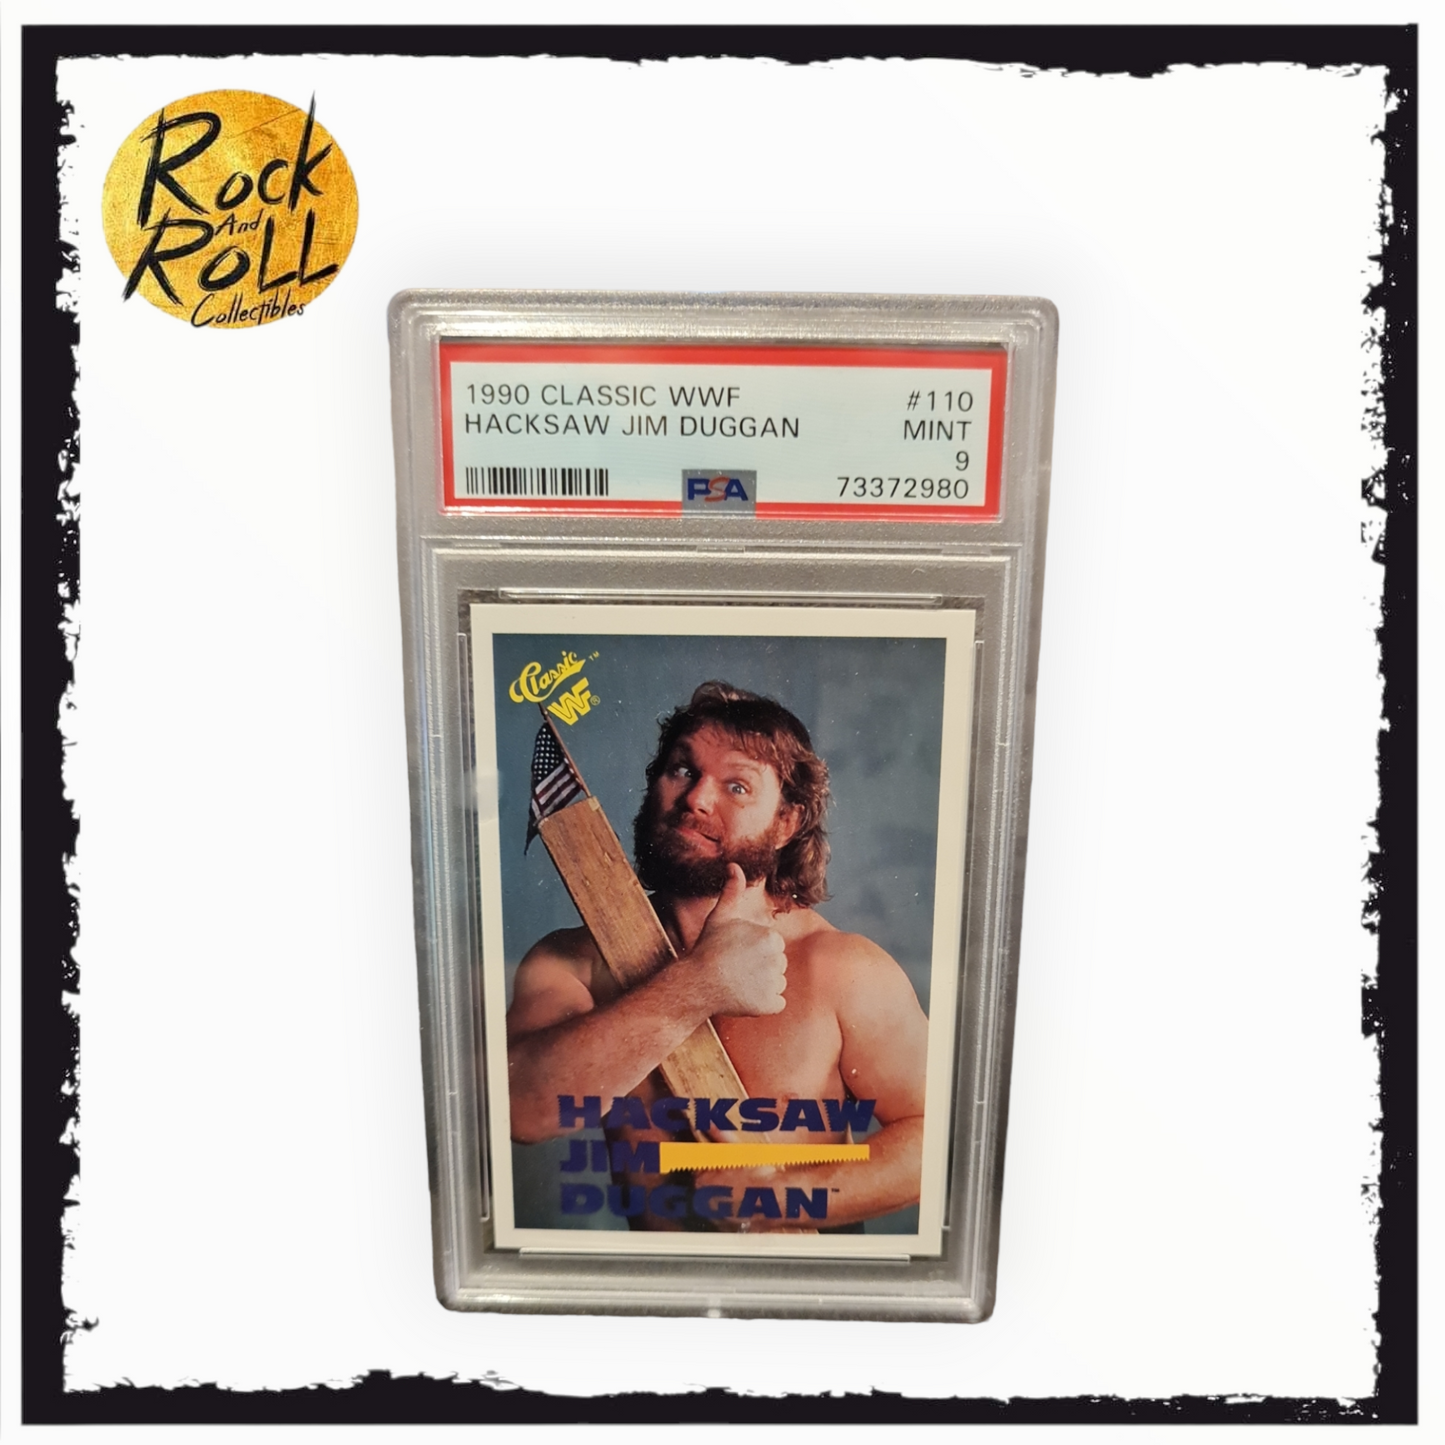 1990 Classic WWF Hacksaw Jim Duggan Card #110 - PSA MINT 9